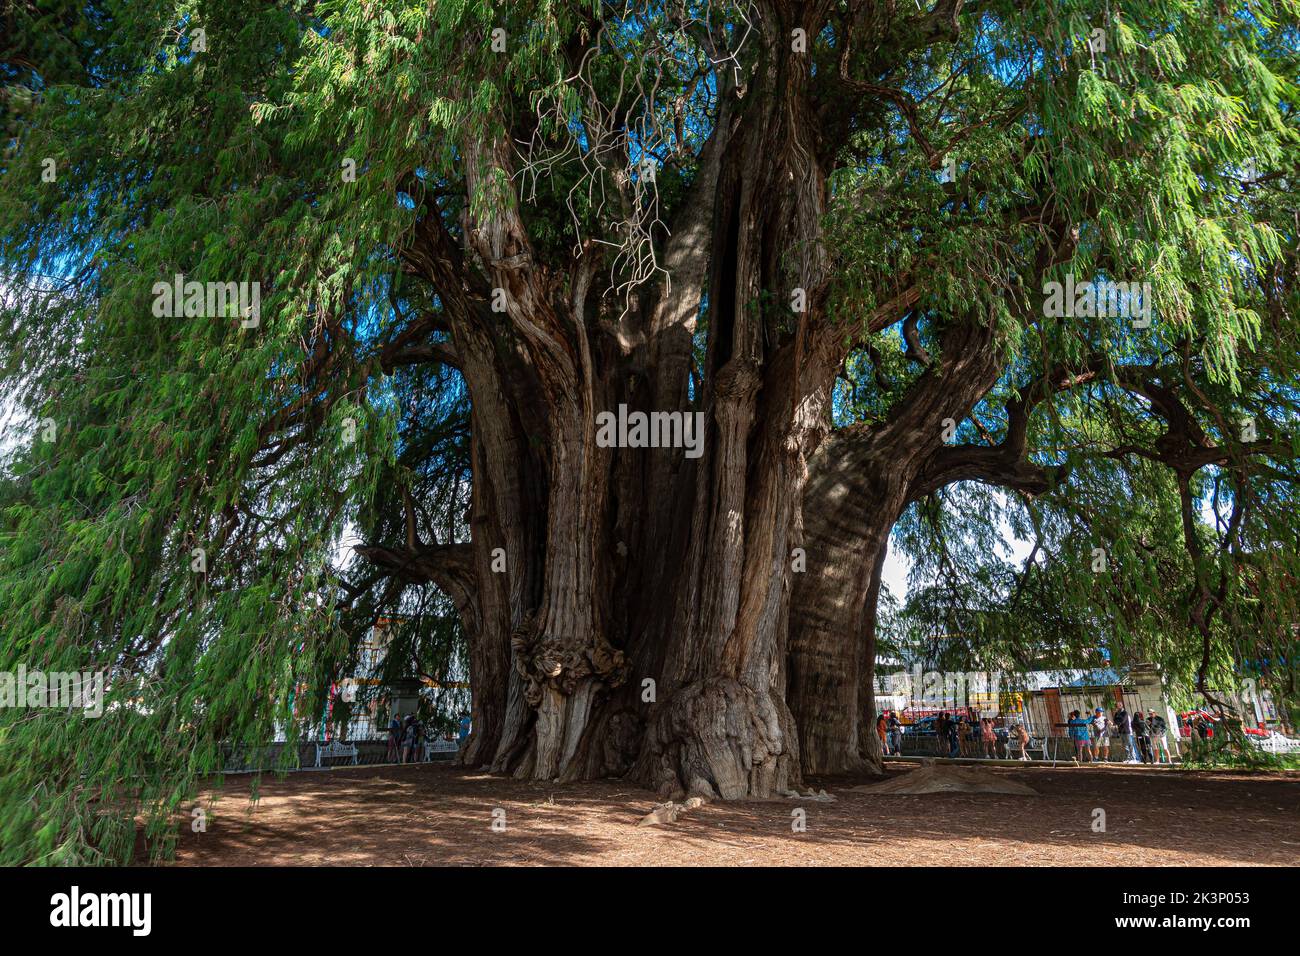 The ancient tree located at Santa Maria del Tule, Oaxaca Stock Photo